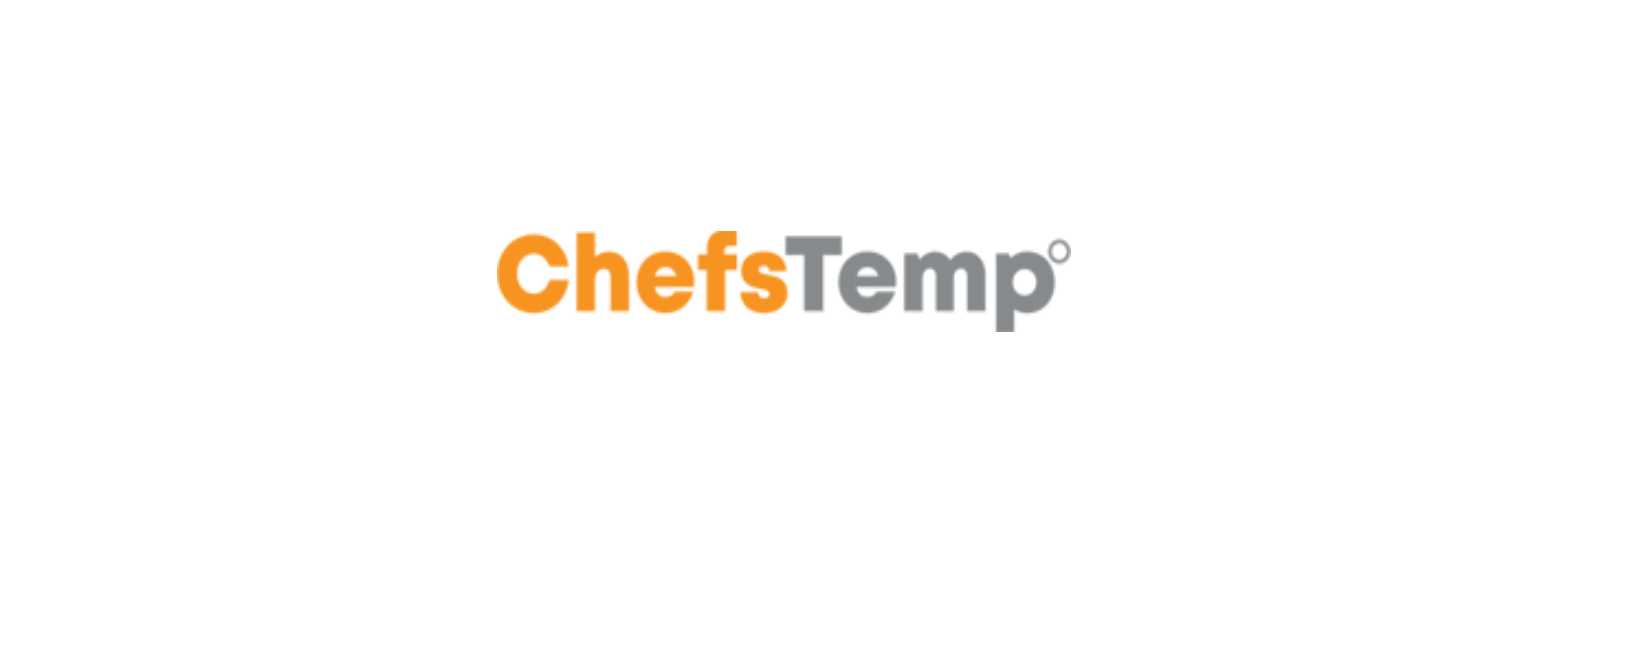 ChefsTemp Discount Codes 2022